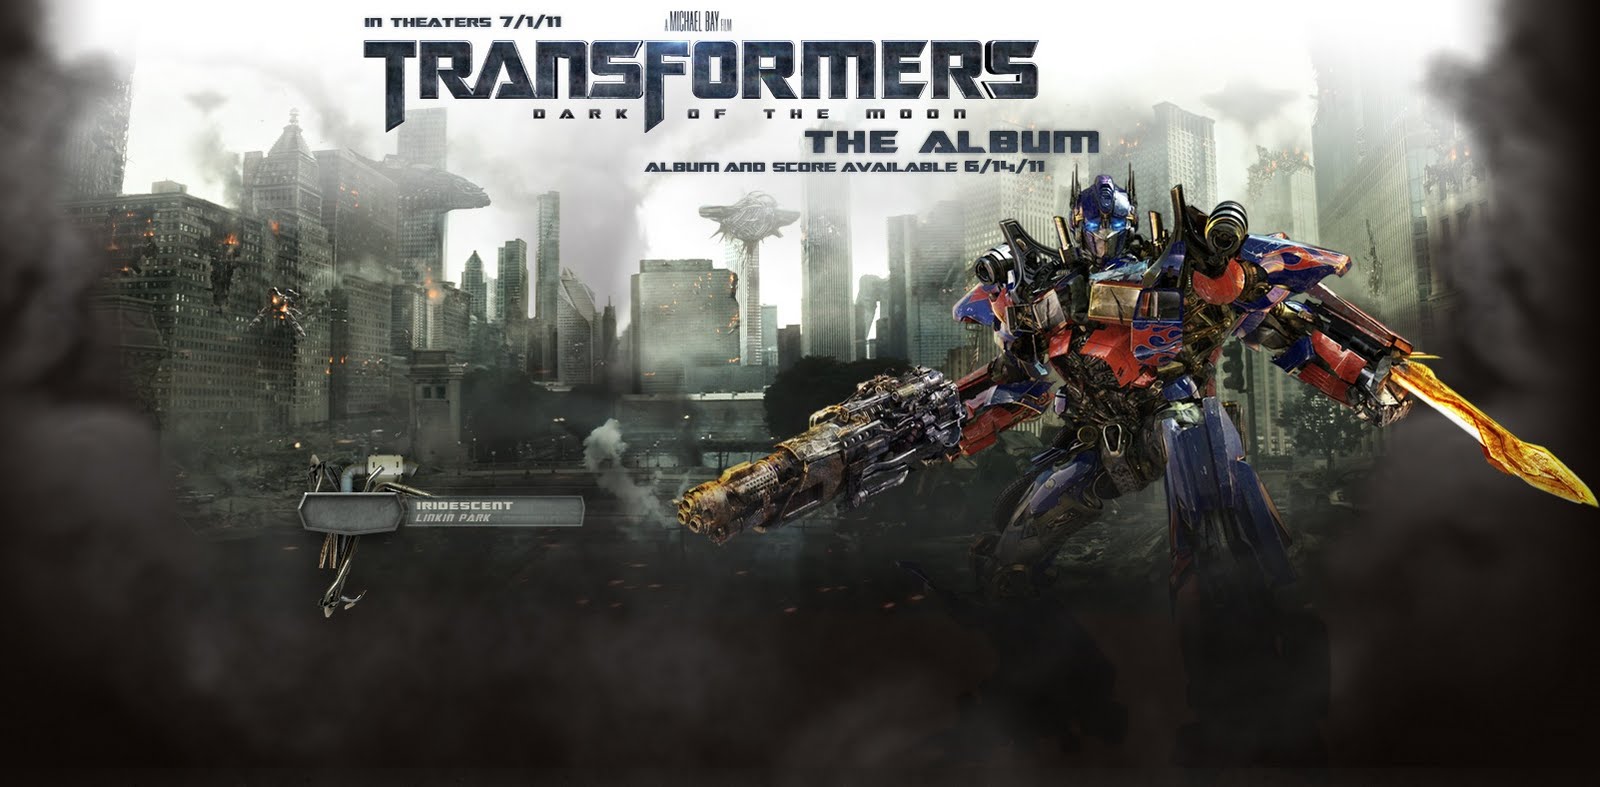 Transformers soundtrack. Трансформеры 3 тёмная сторона Луны Автоботы. Трансформеры 3 тёмная сторона Луны Постер. Трансформеры тёмная сторона Луны Оптимус Прайм.